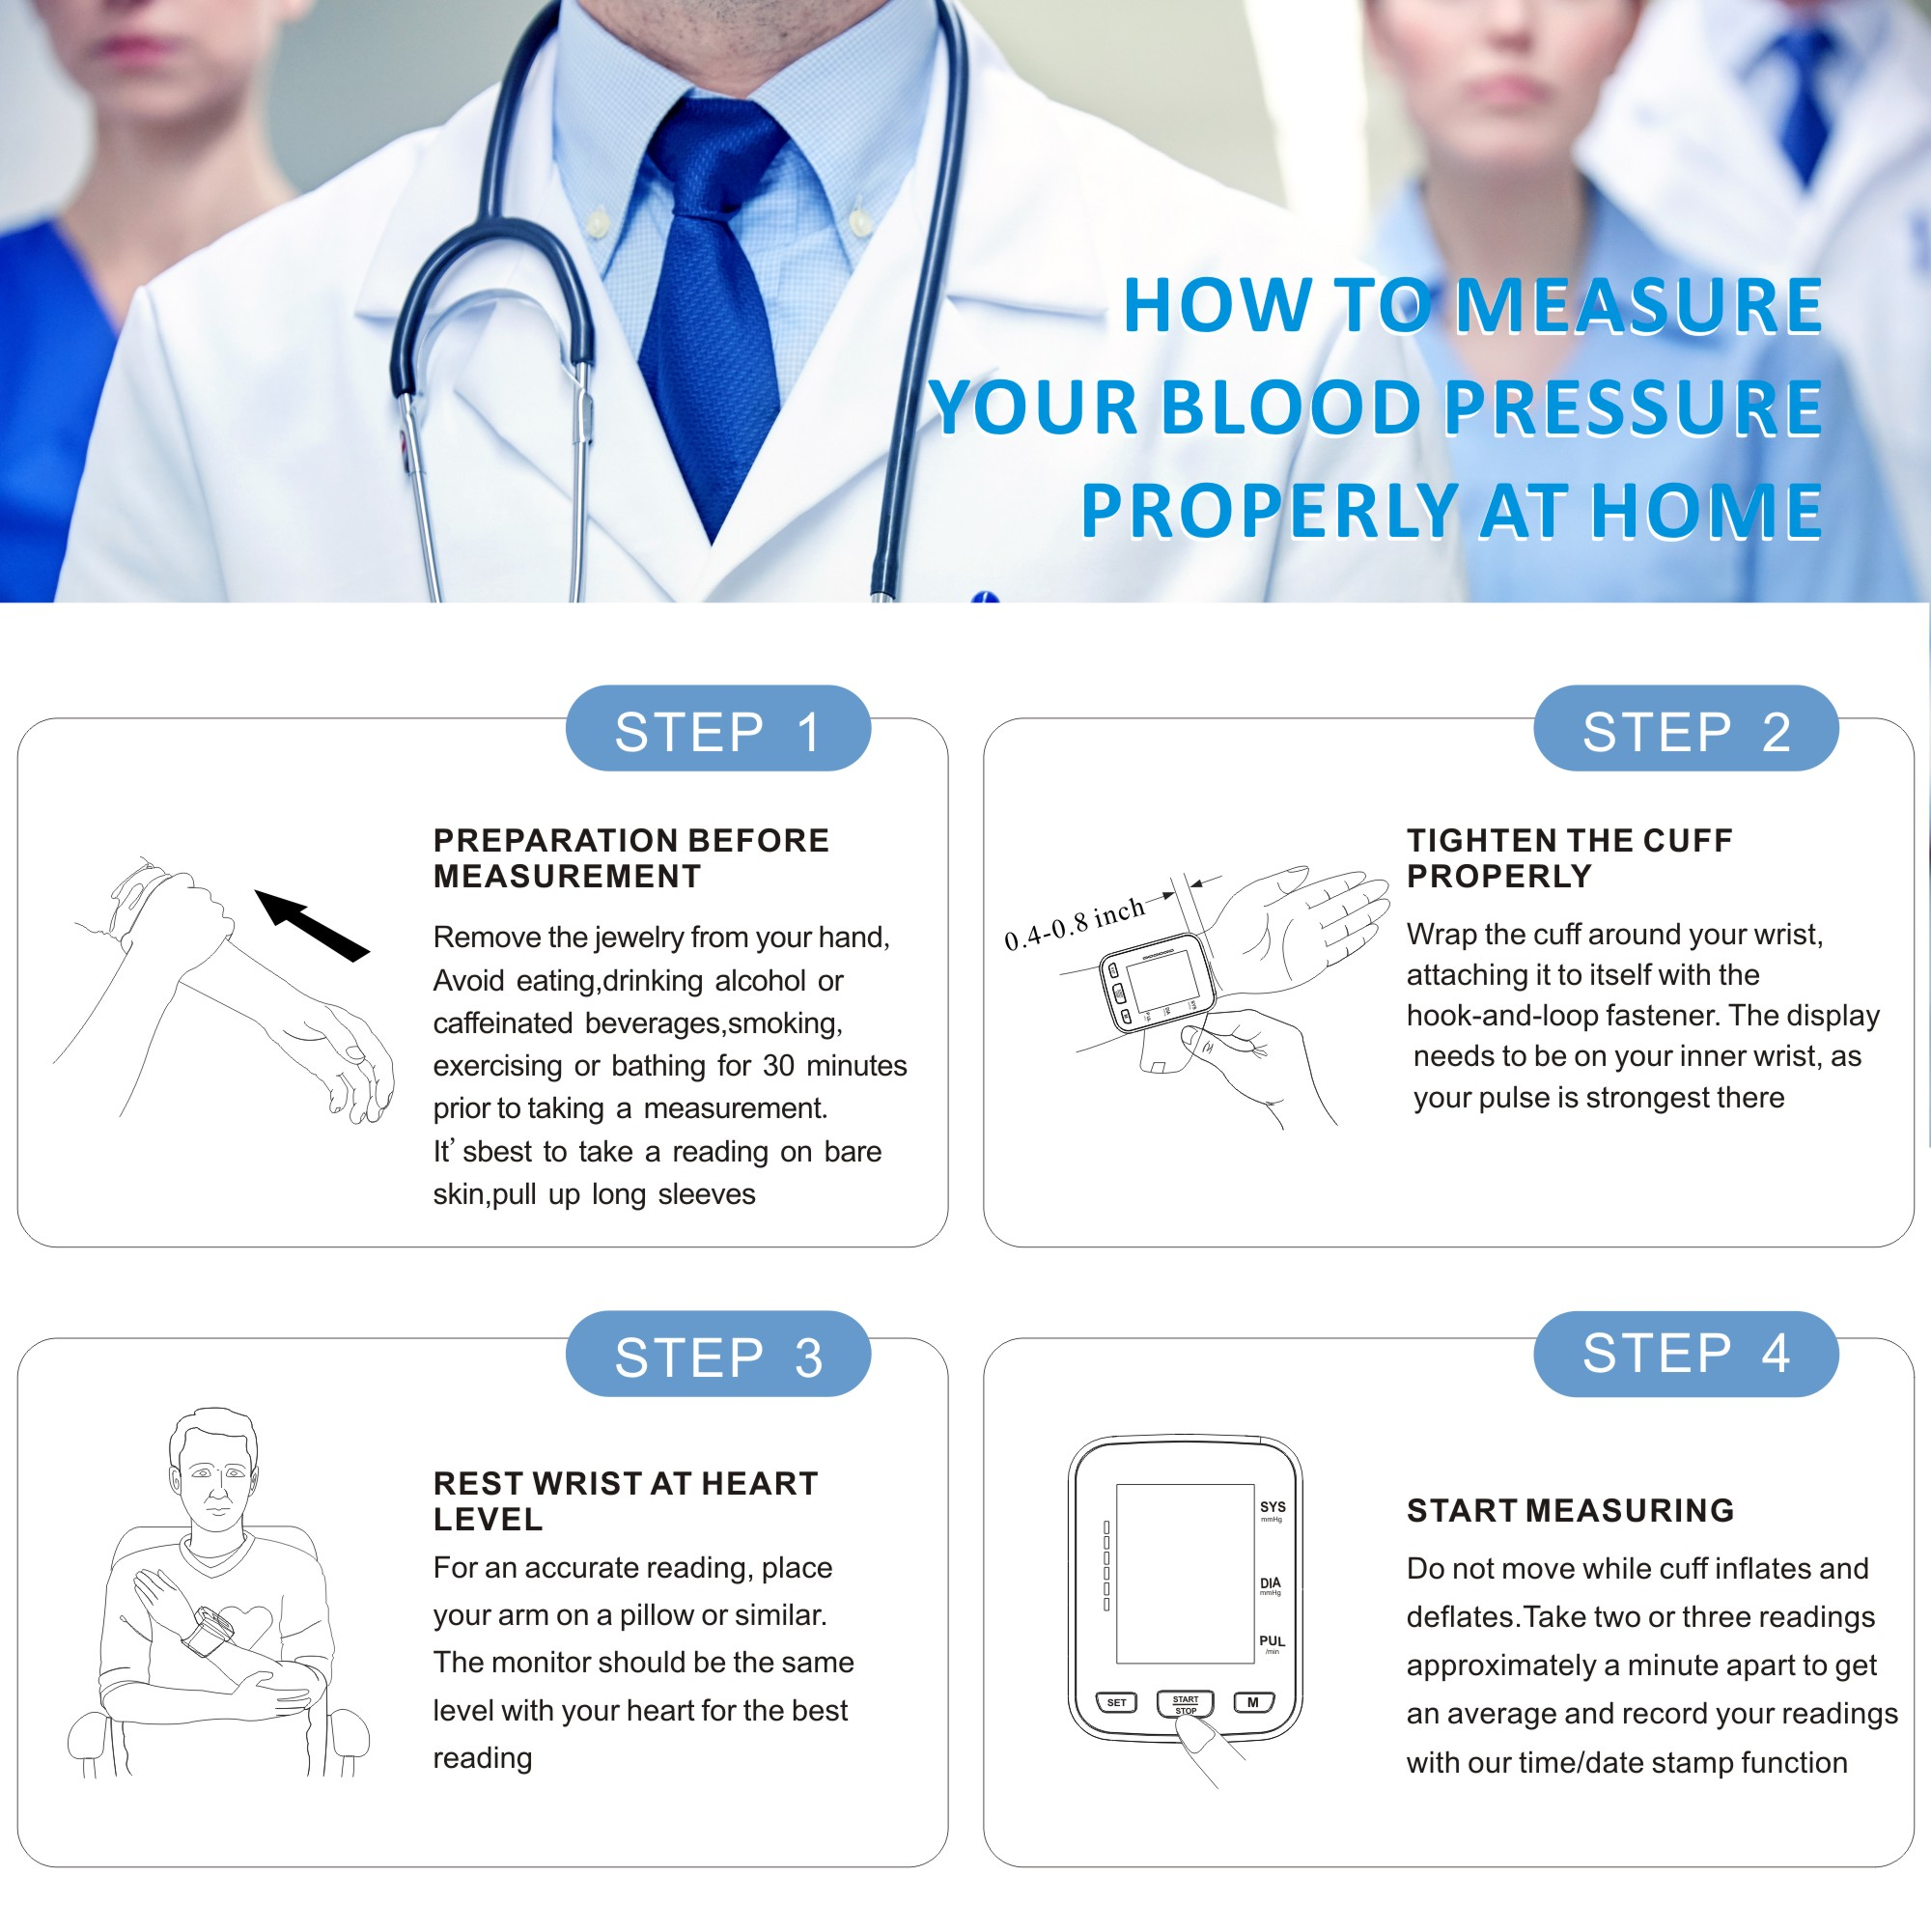 Els monitors de pressió arterial de canell són precisos?